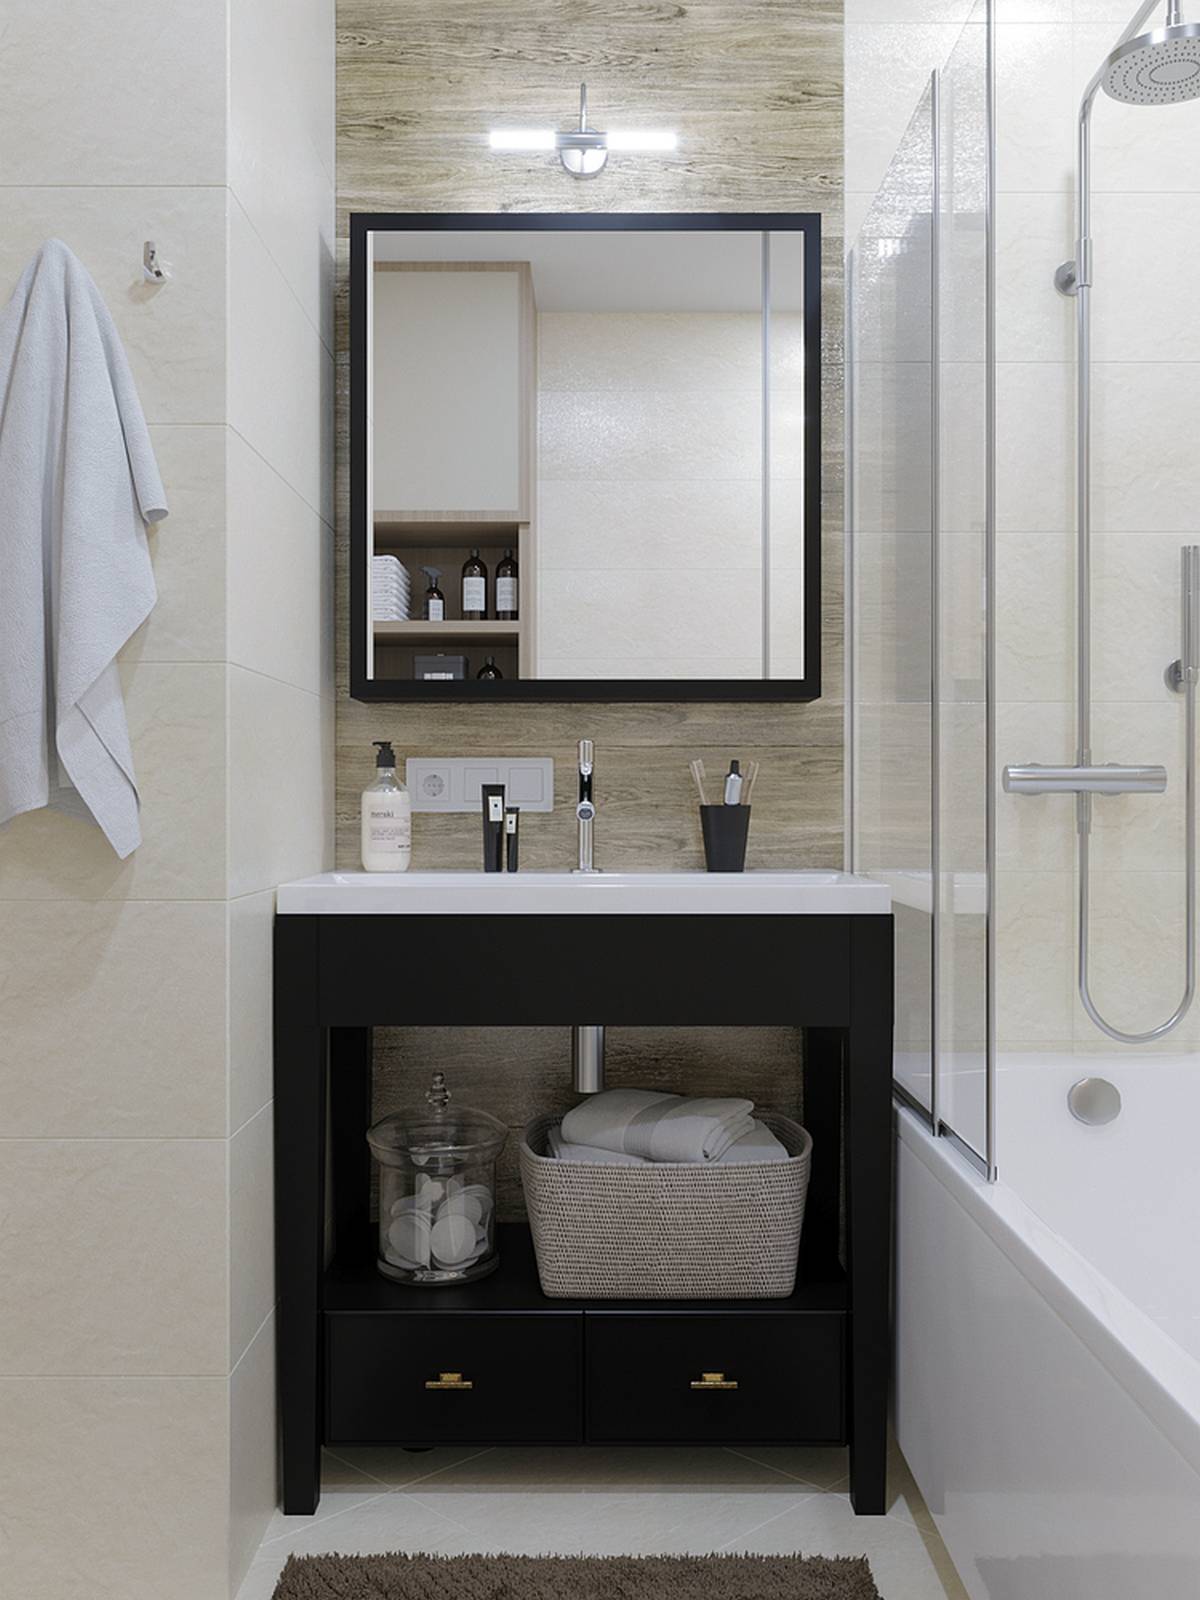 Khu vực bồn rửa tay kết hợp tủ sơn màu đen nổi bật trên phông nền trung tính. Tấm gương soi hình vuông cũng góp phần phản chiếu ánh sáng và nhân rộng không gian.